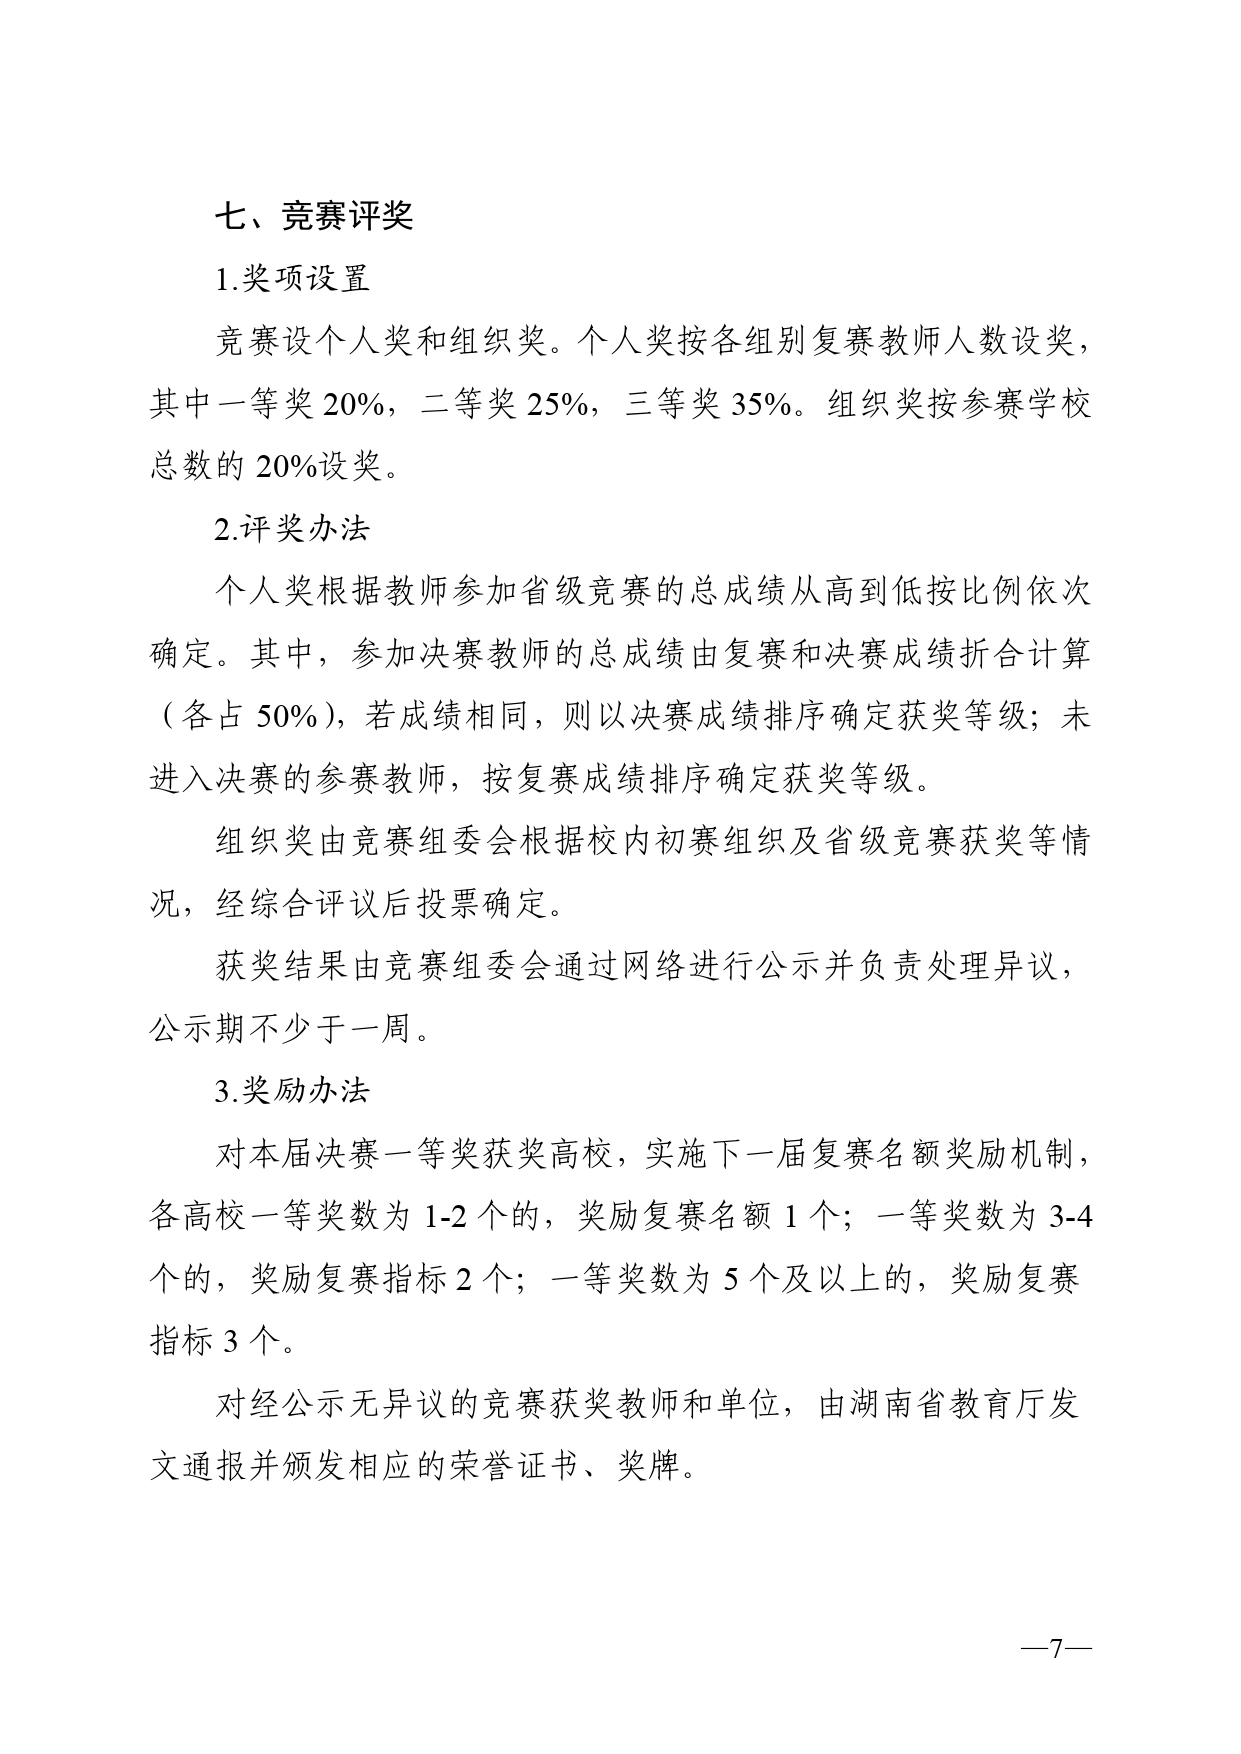 关于开展2023年湖南省普通高校教师信息化教学竞赛的通知正文(1)_page-0007.jpg